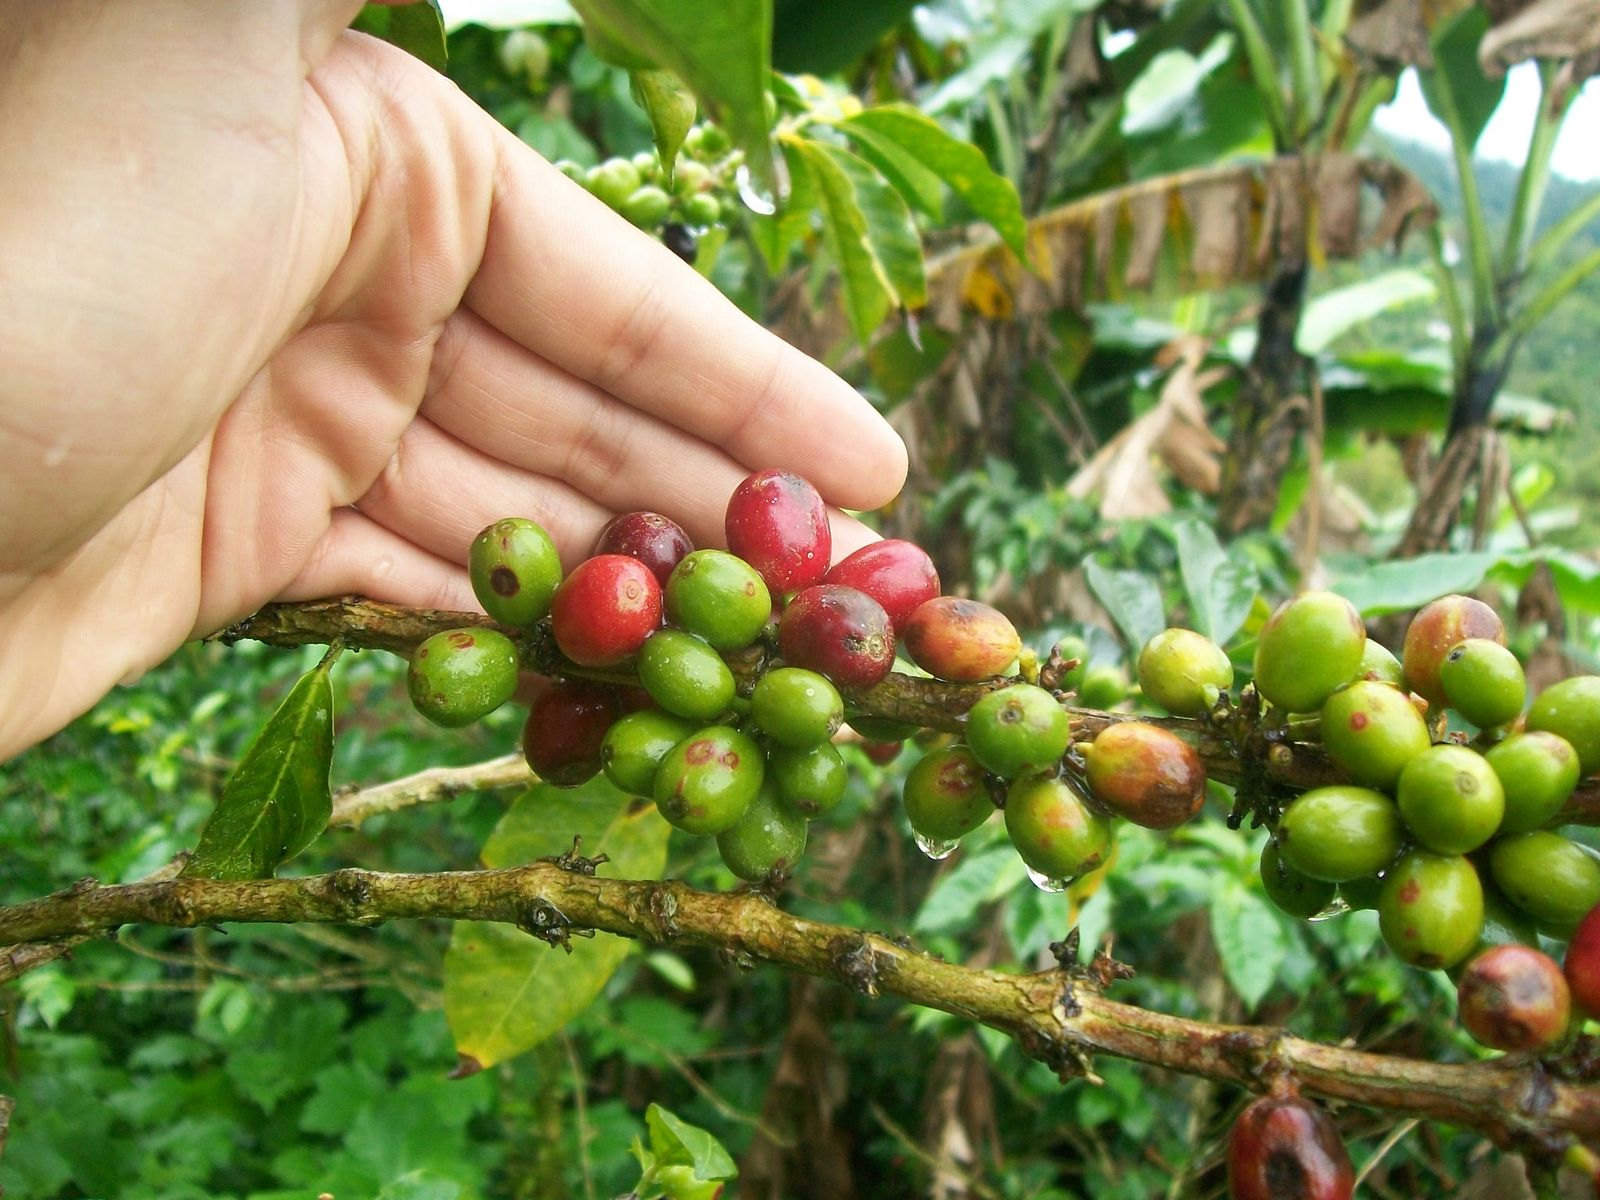 La foto muestra los cultivos de café de Manizales de la empresa  tisquesusa, Cortesía: Café tisquesusa.